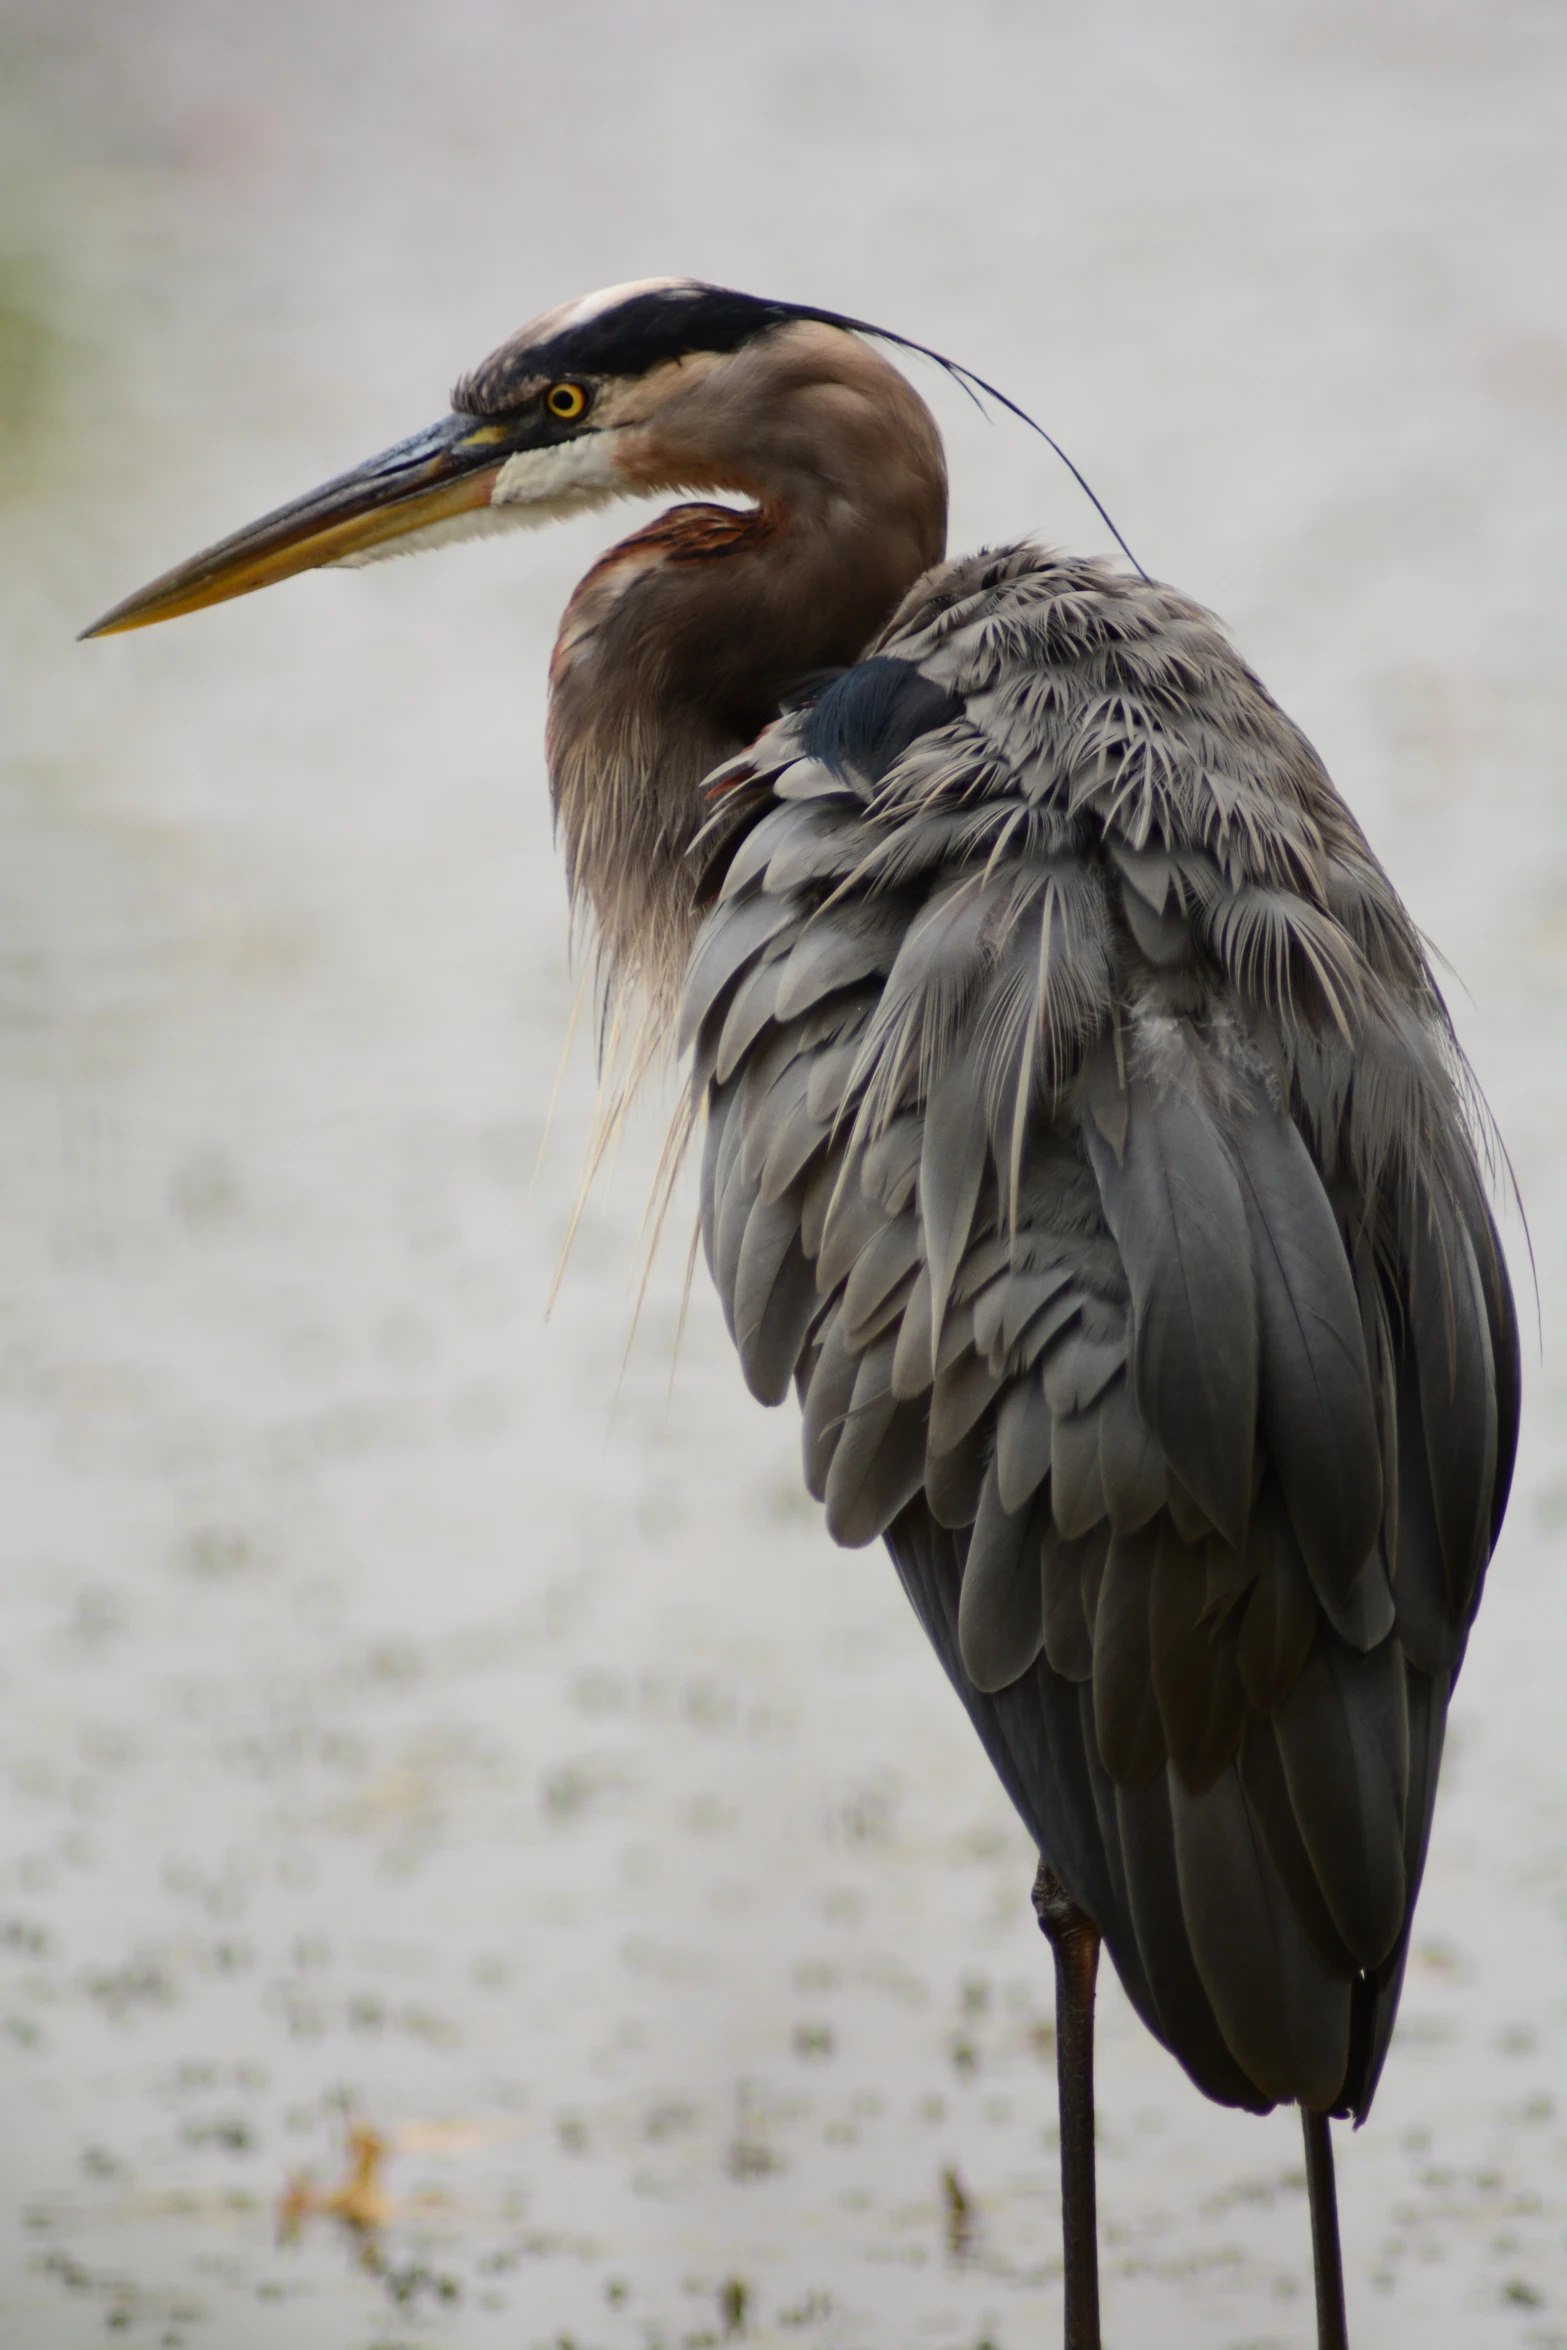 an extreme closeup of a bird with a long beak